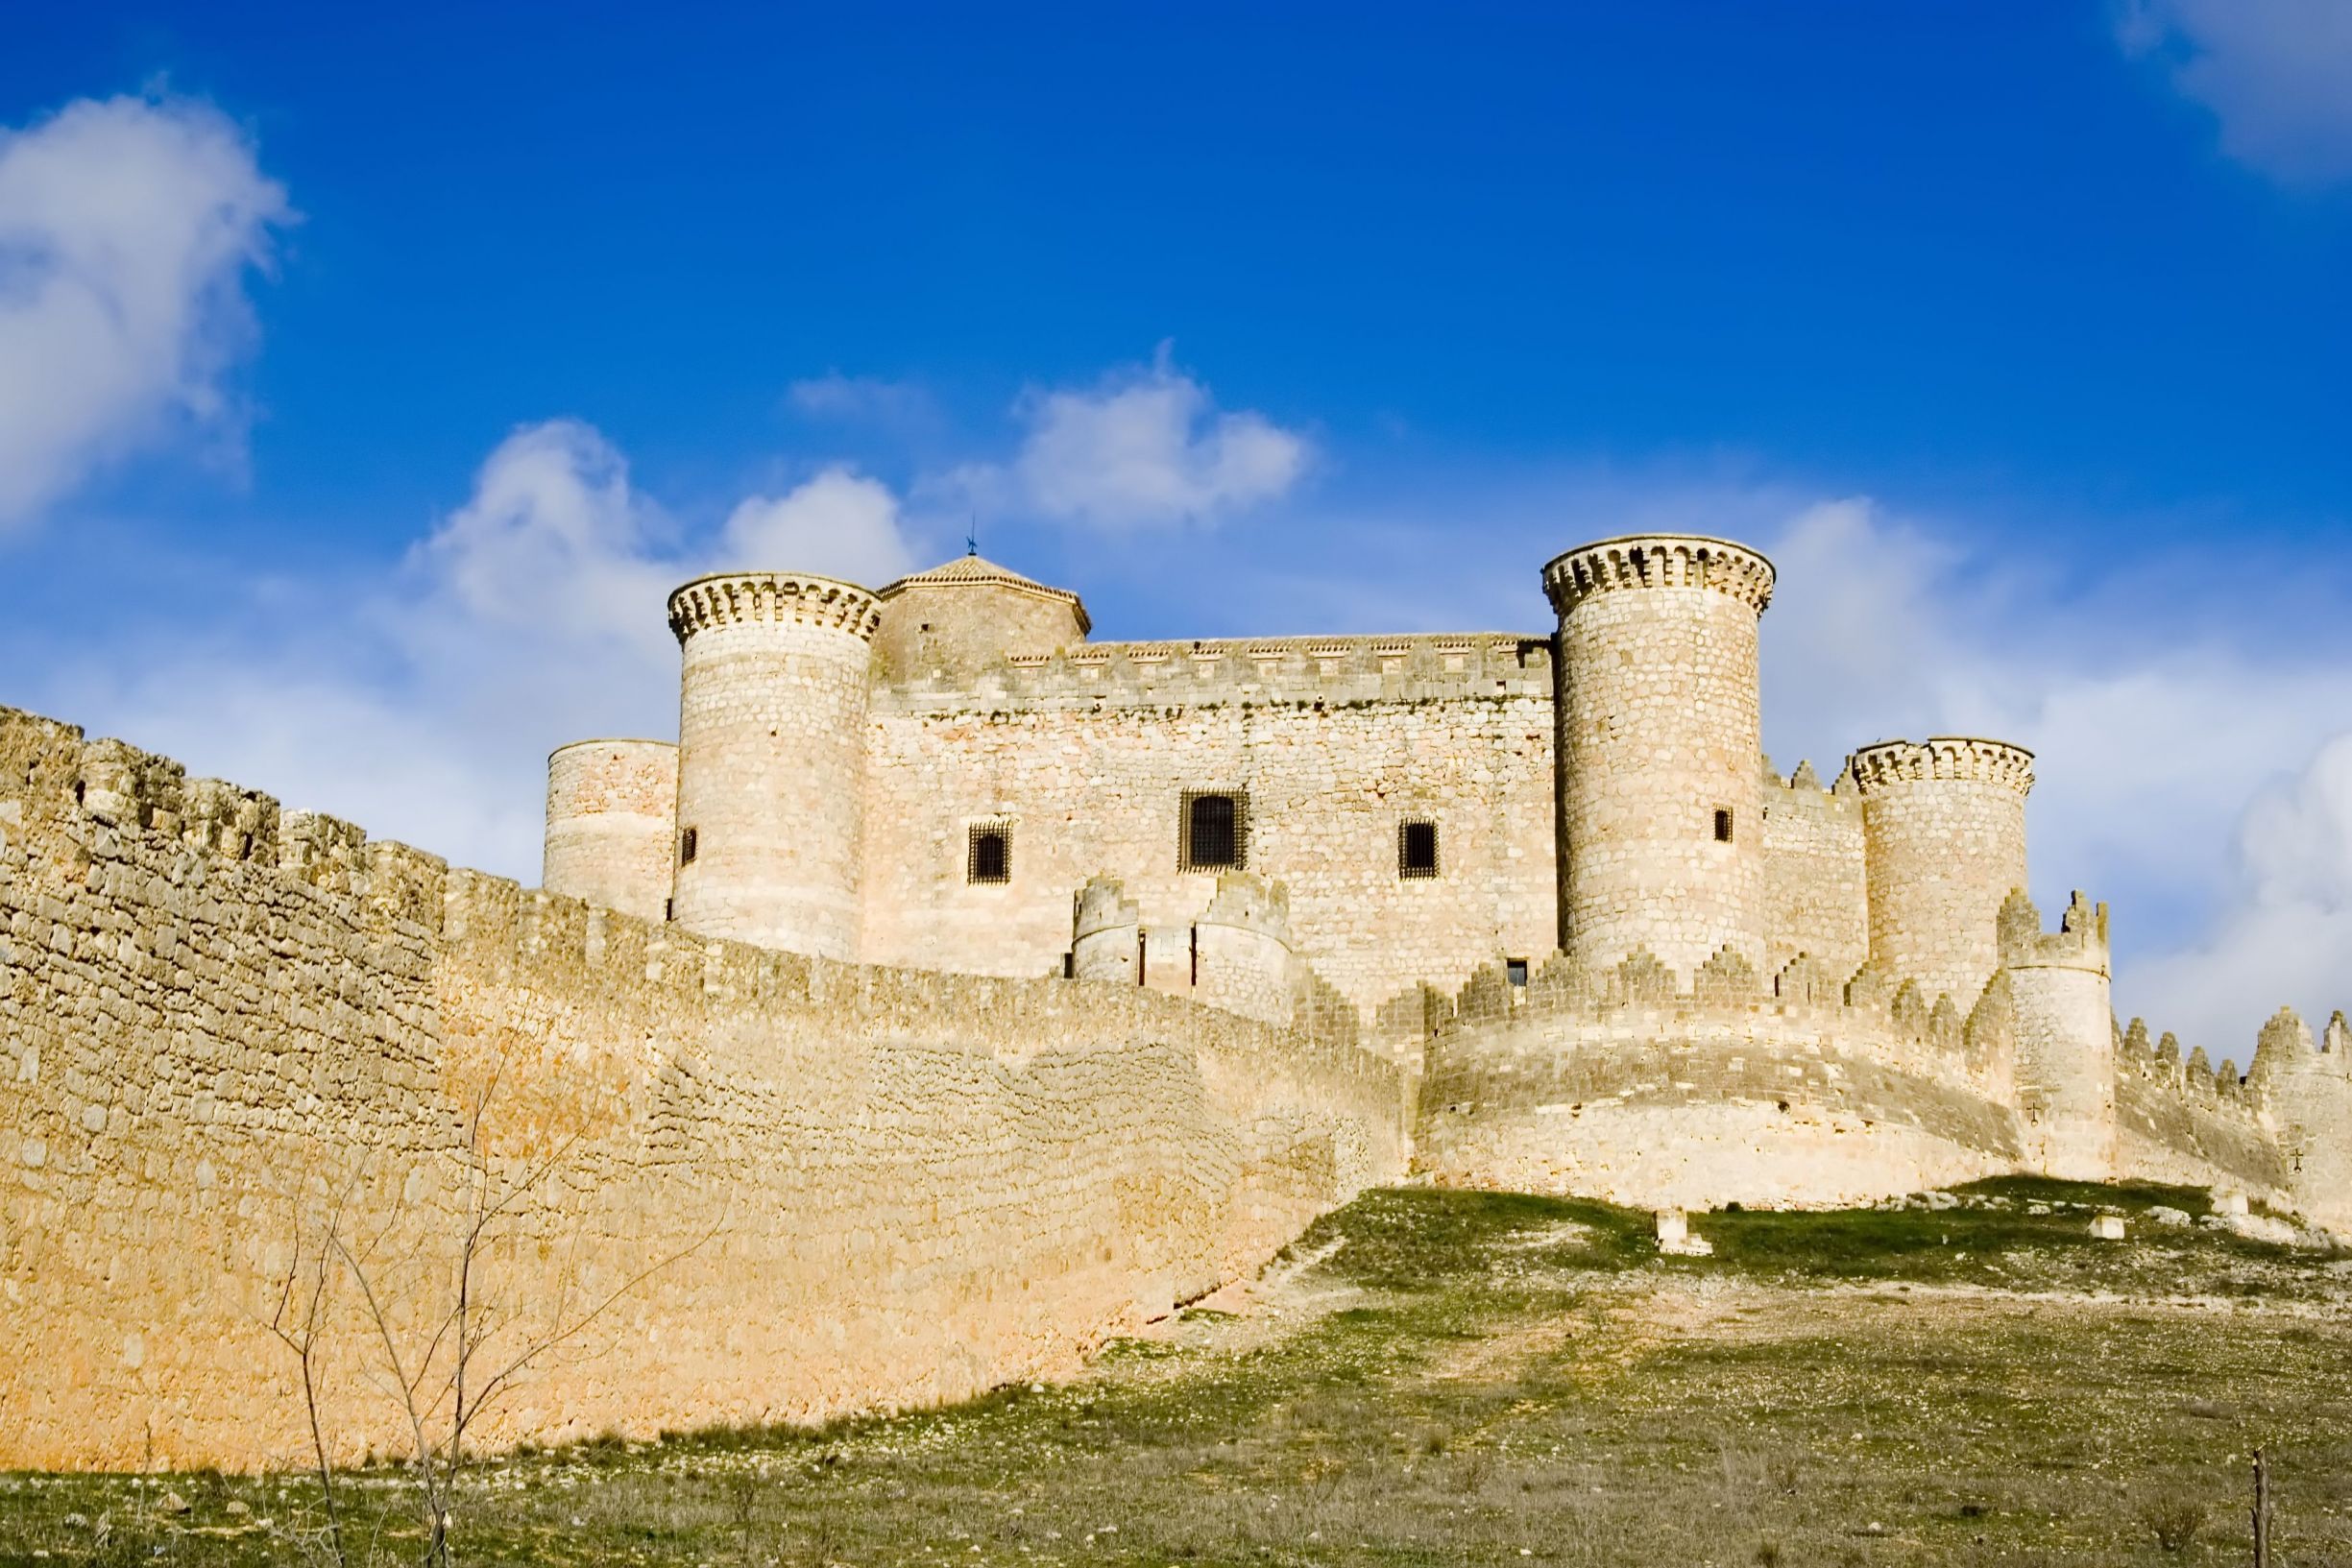 Belmonte Castle near La Mancha, Spain